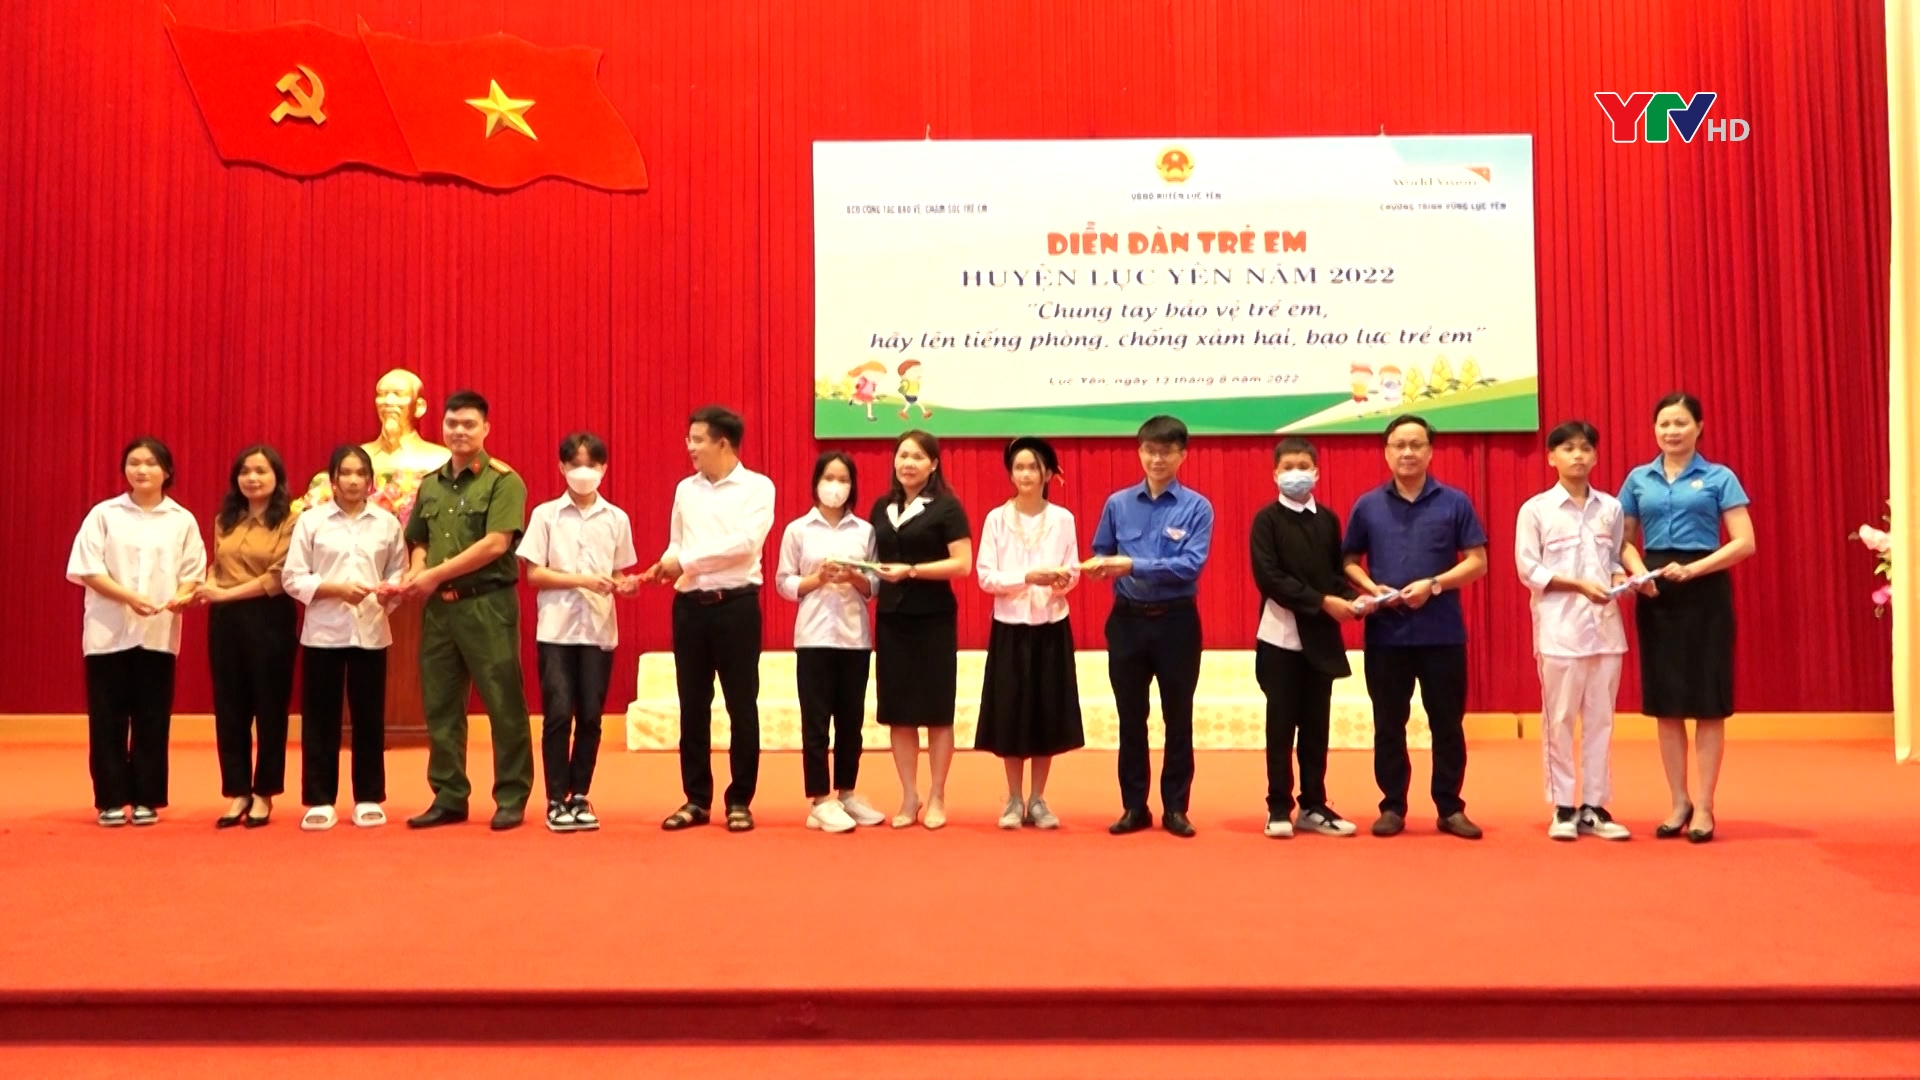 Lục Yên tổ chức Diễn đàn trẻ em 2022